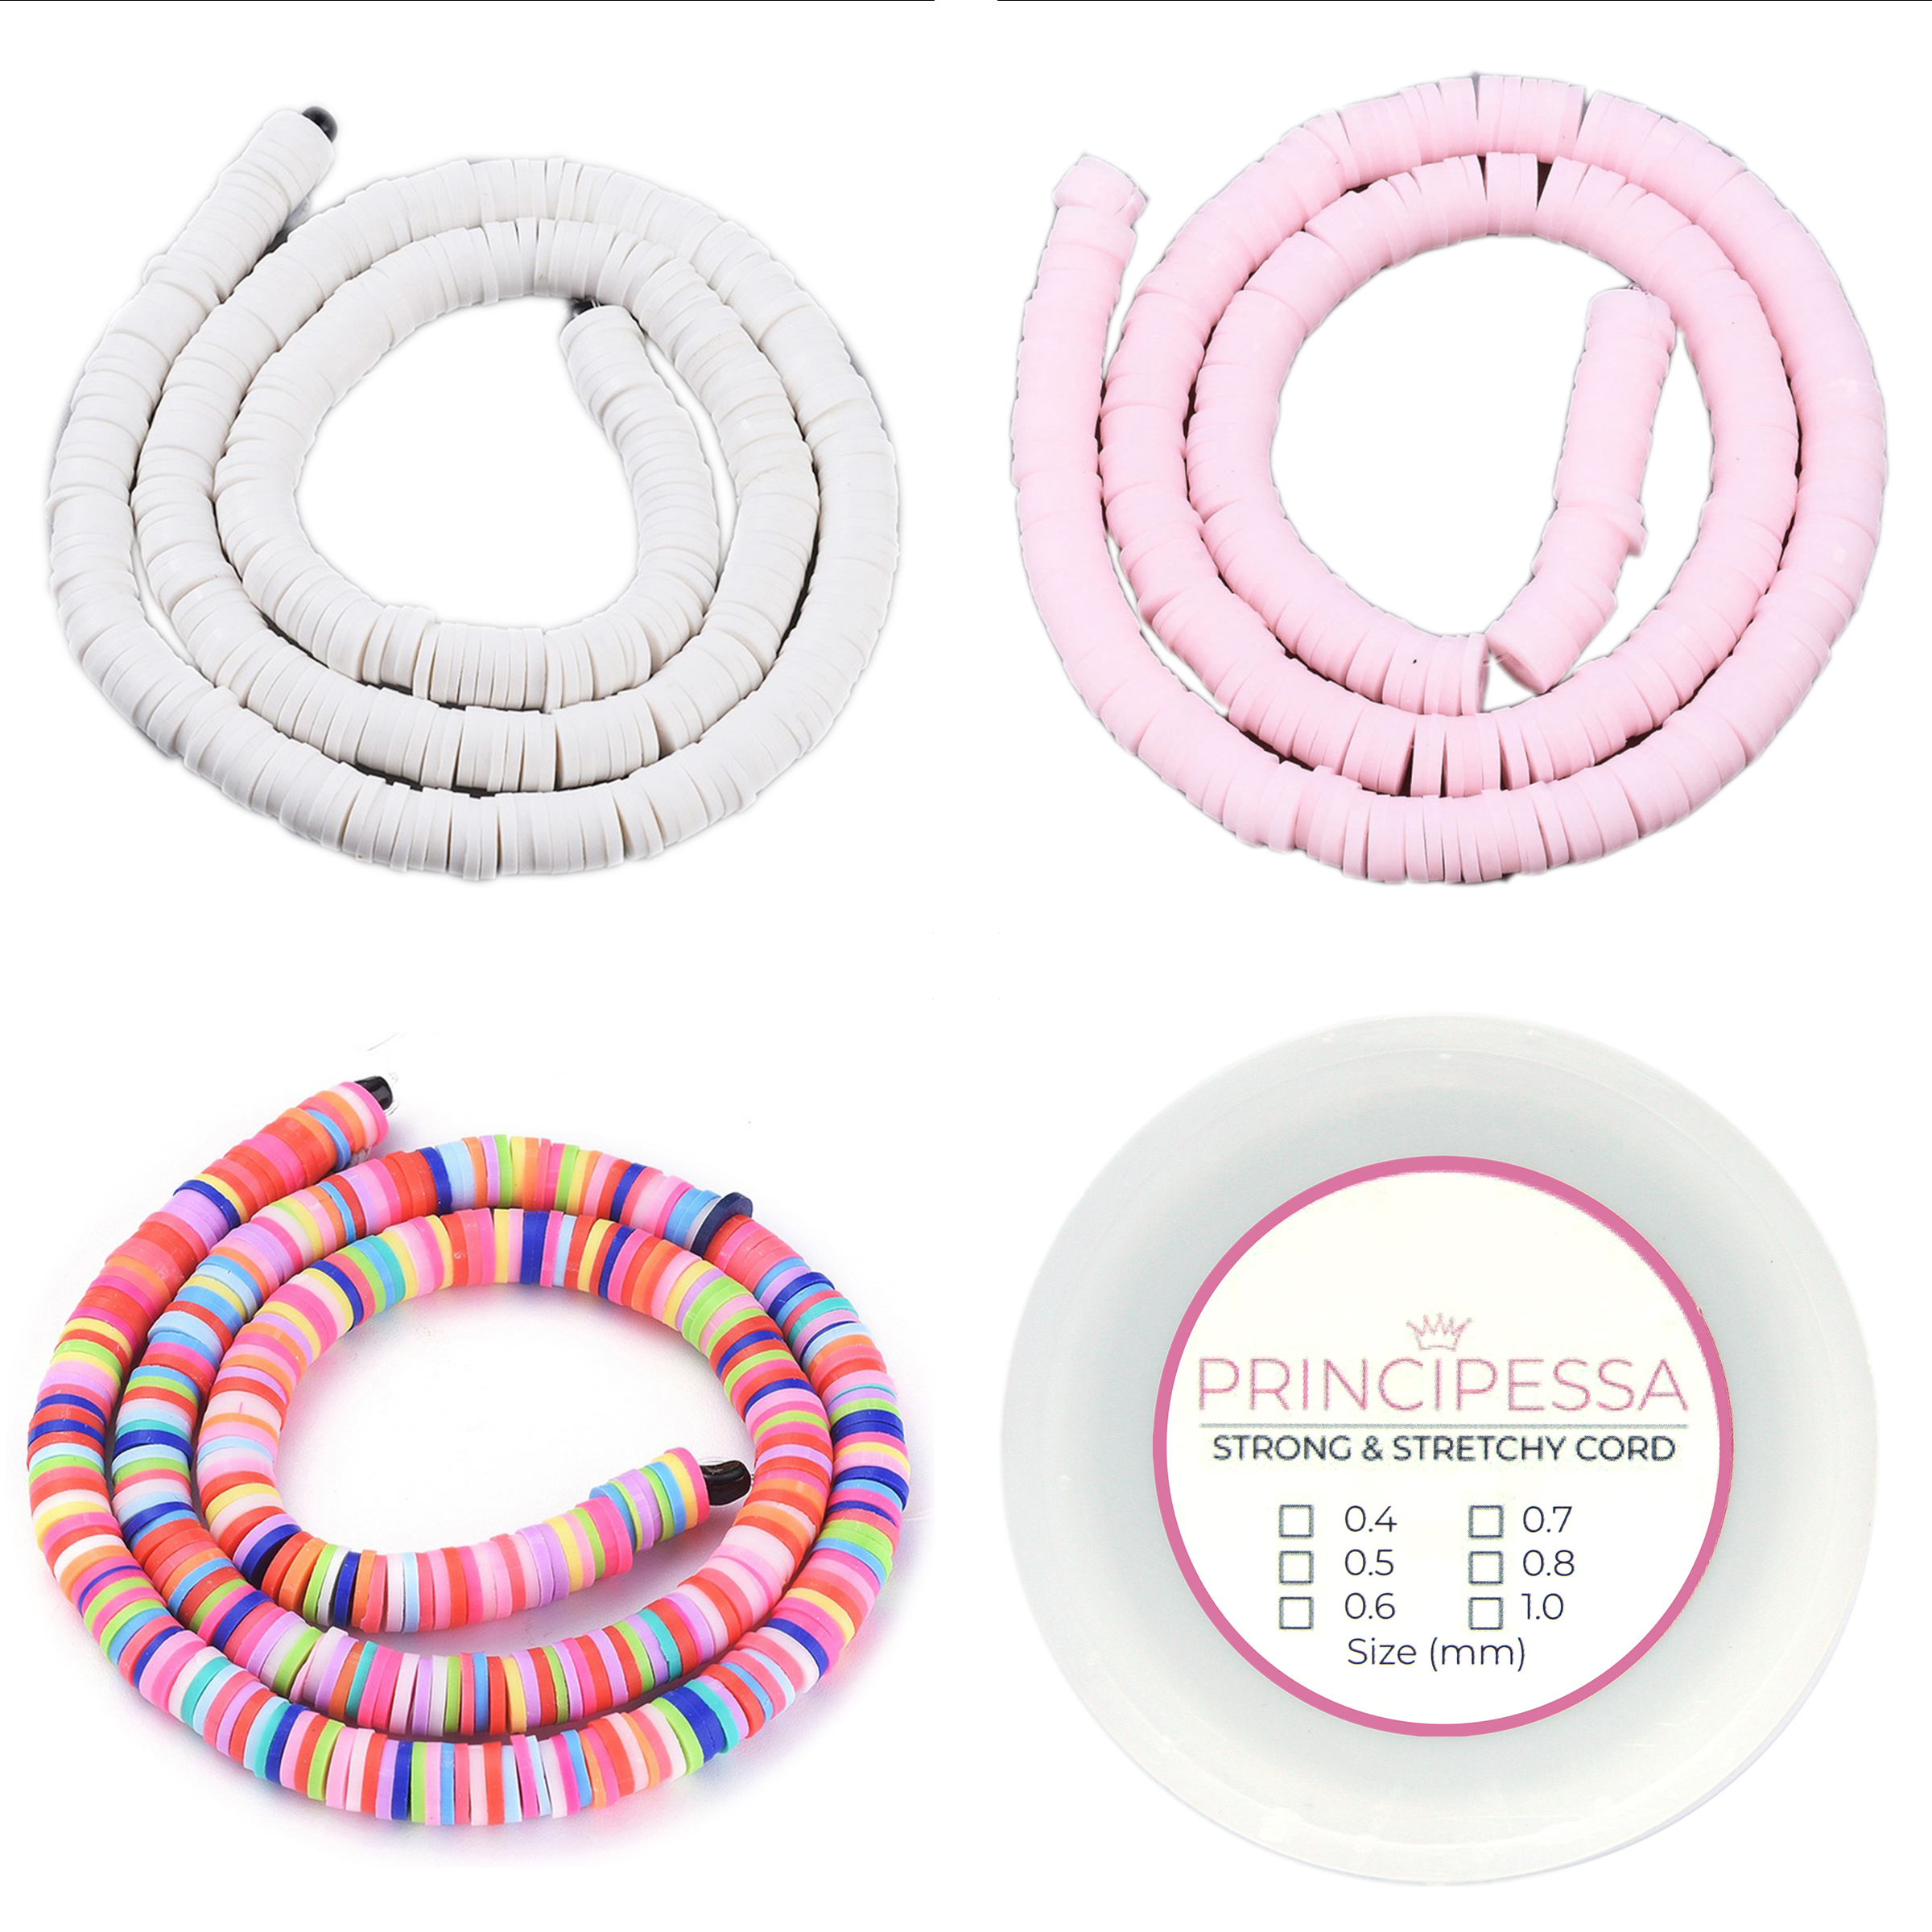 Principessa Katsuki kralen met rol elastiek – Ibiza-mix, Roze en Ivoor Wit – 1.150 kralen – Polymeer klei – 6mm kralen